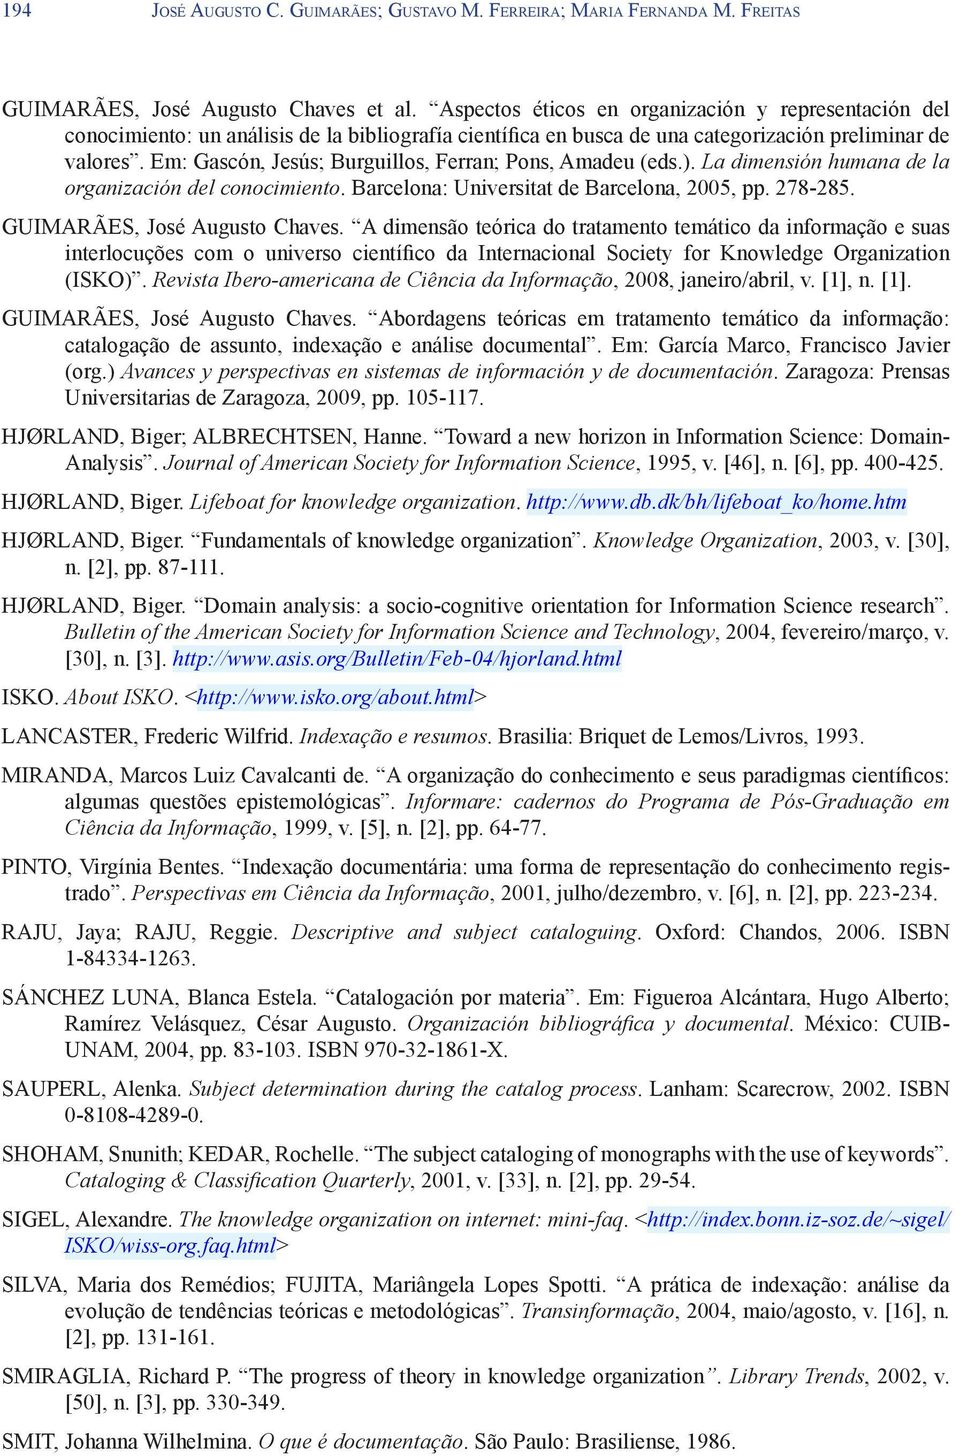 Em: Gascón, Jesús; Burguillos, Ferran; Pons, Amadeu (eds.). La dimensión humana de la organización del conocimiento. Barcelona: Universitat de Barcelona, 2005, pp. 278-285.